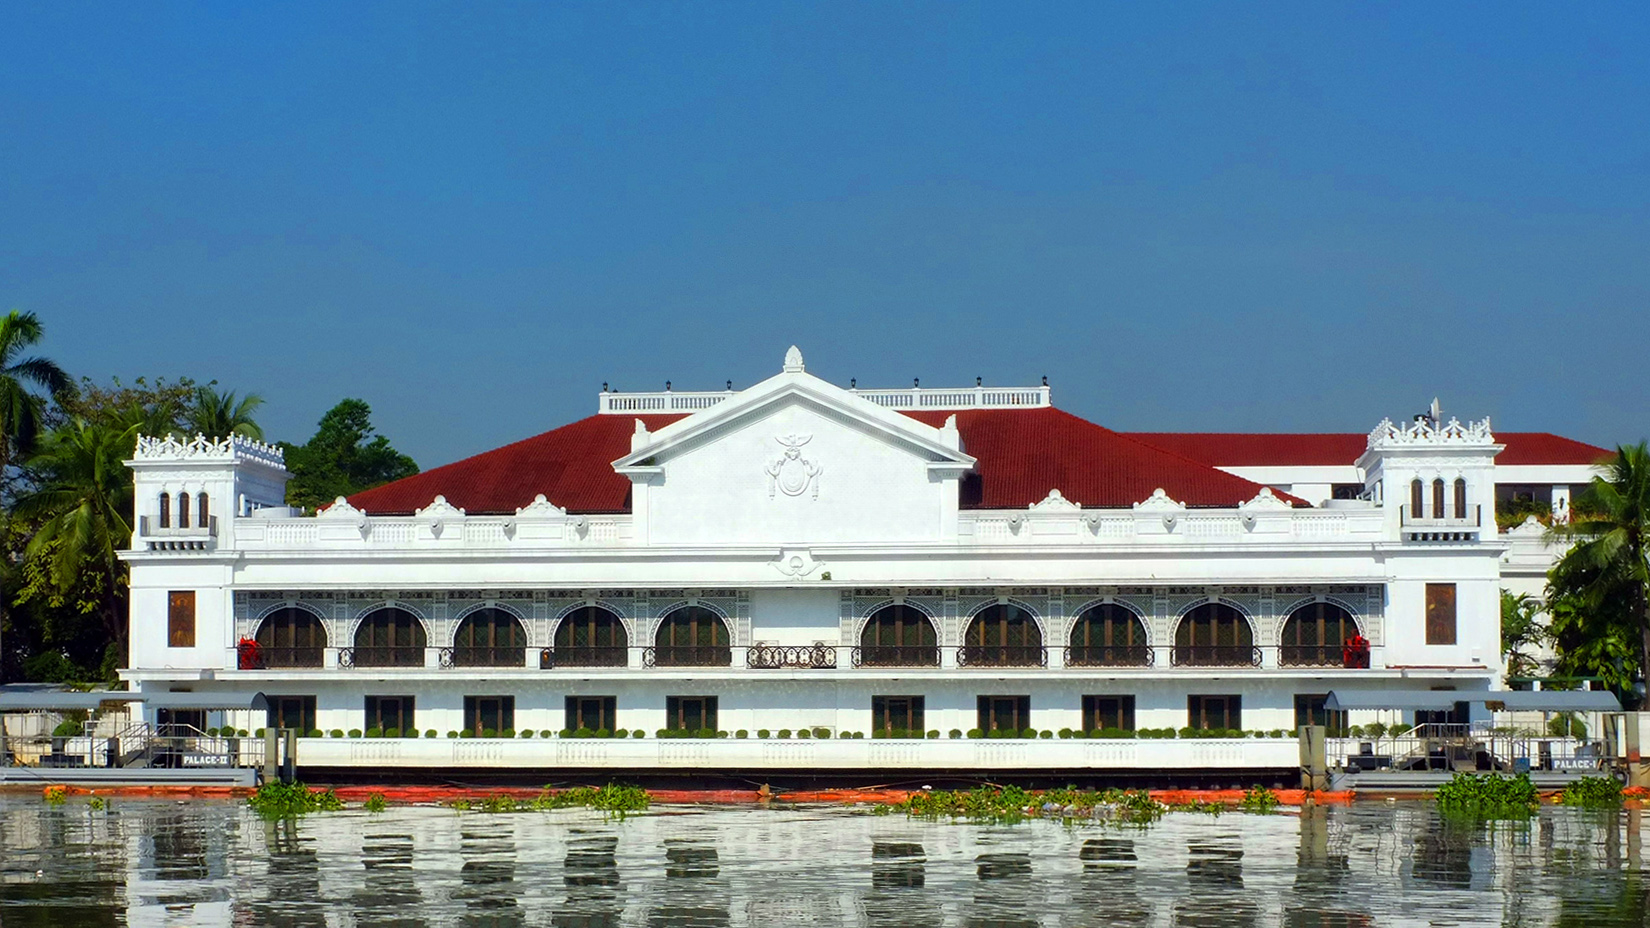 Malacañang Palace. Photo: Wikimedia